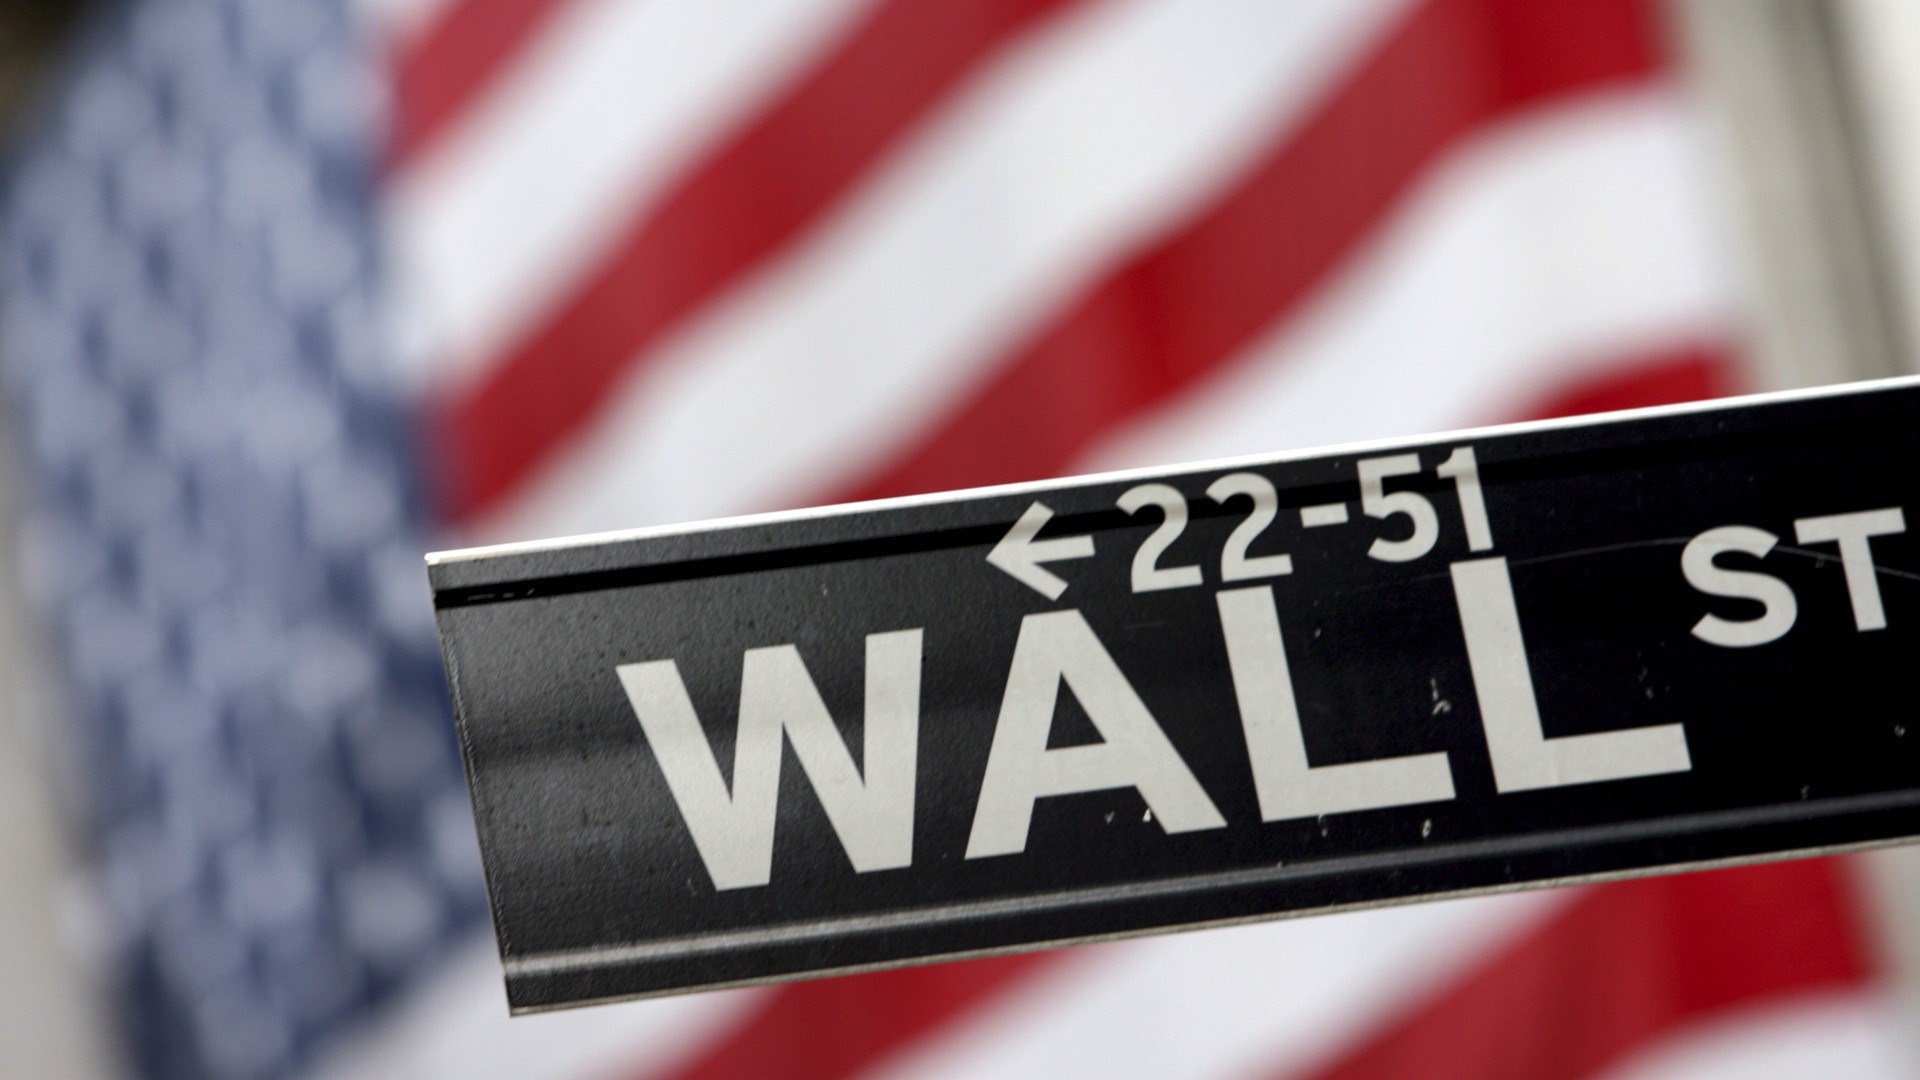 HD Wall Street Wallpaper HDwallsource